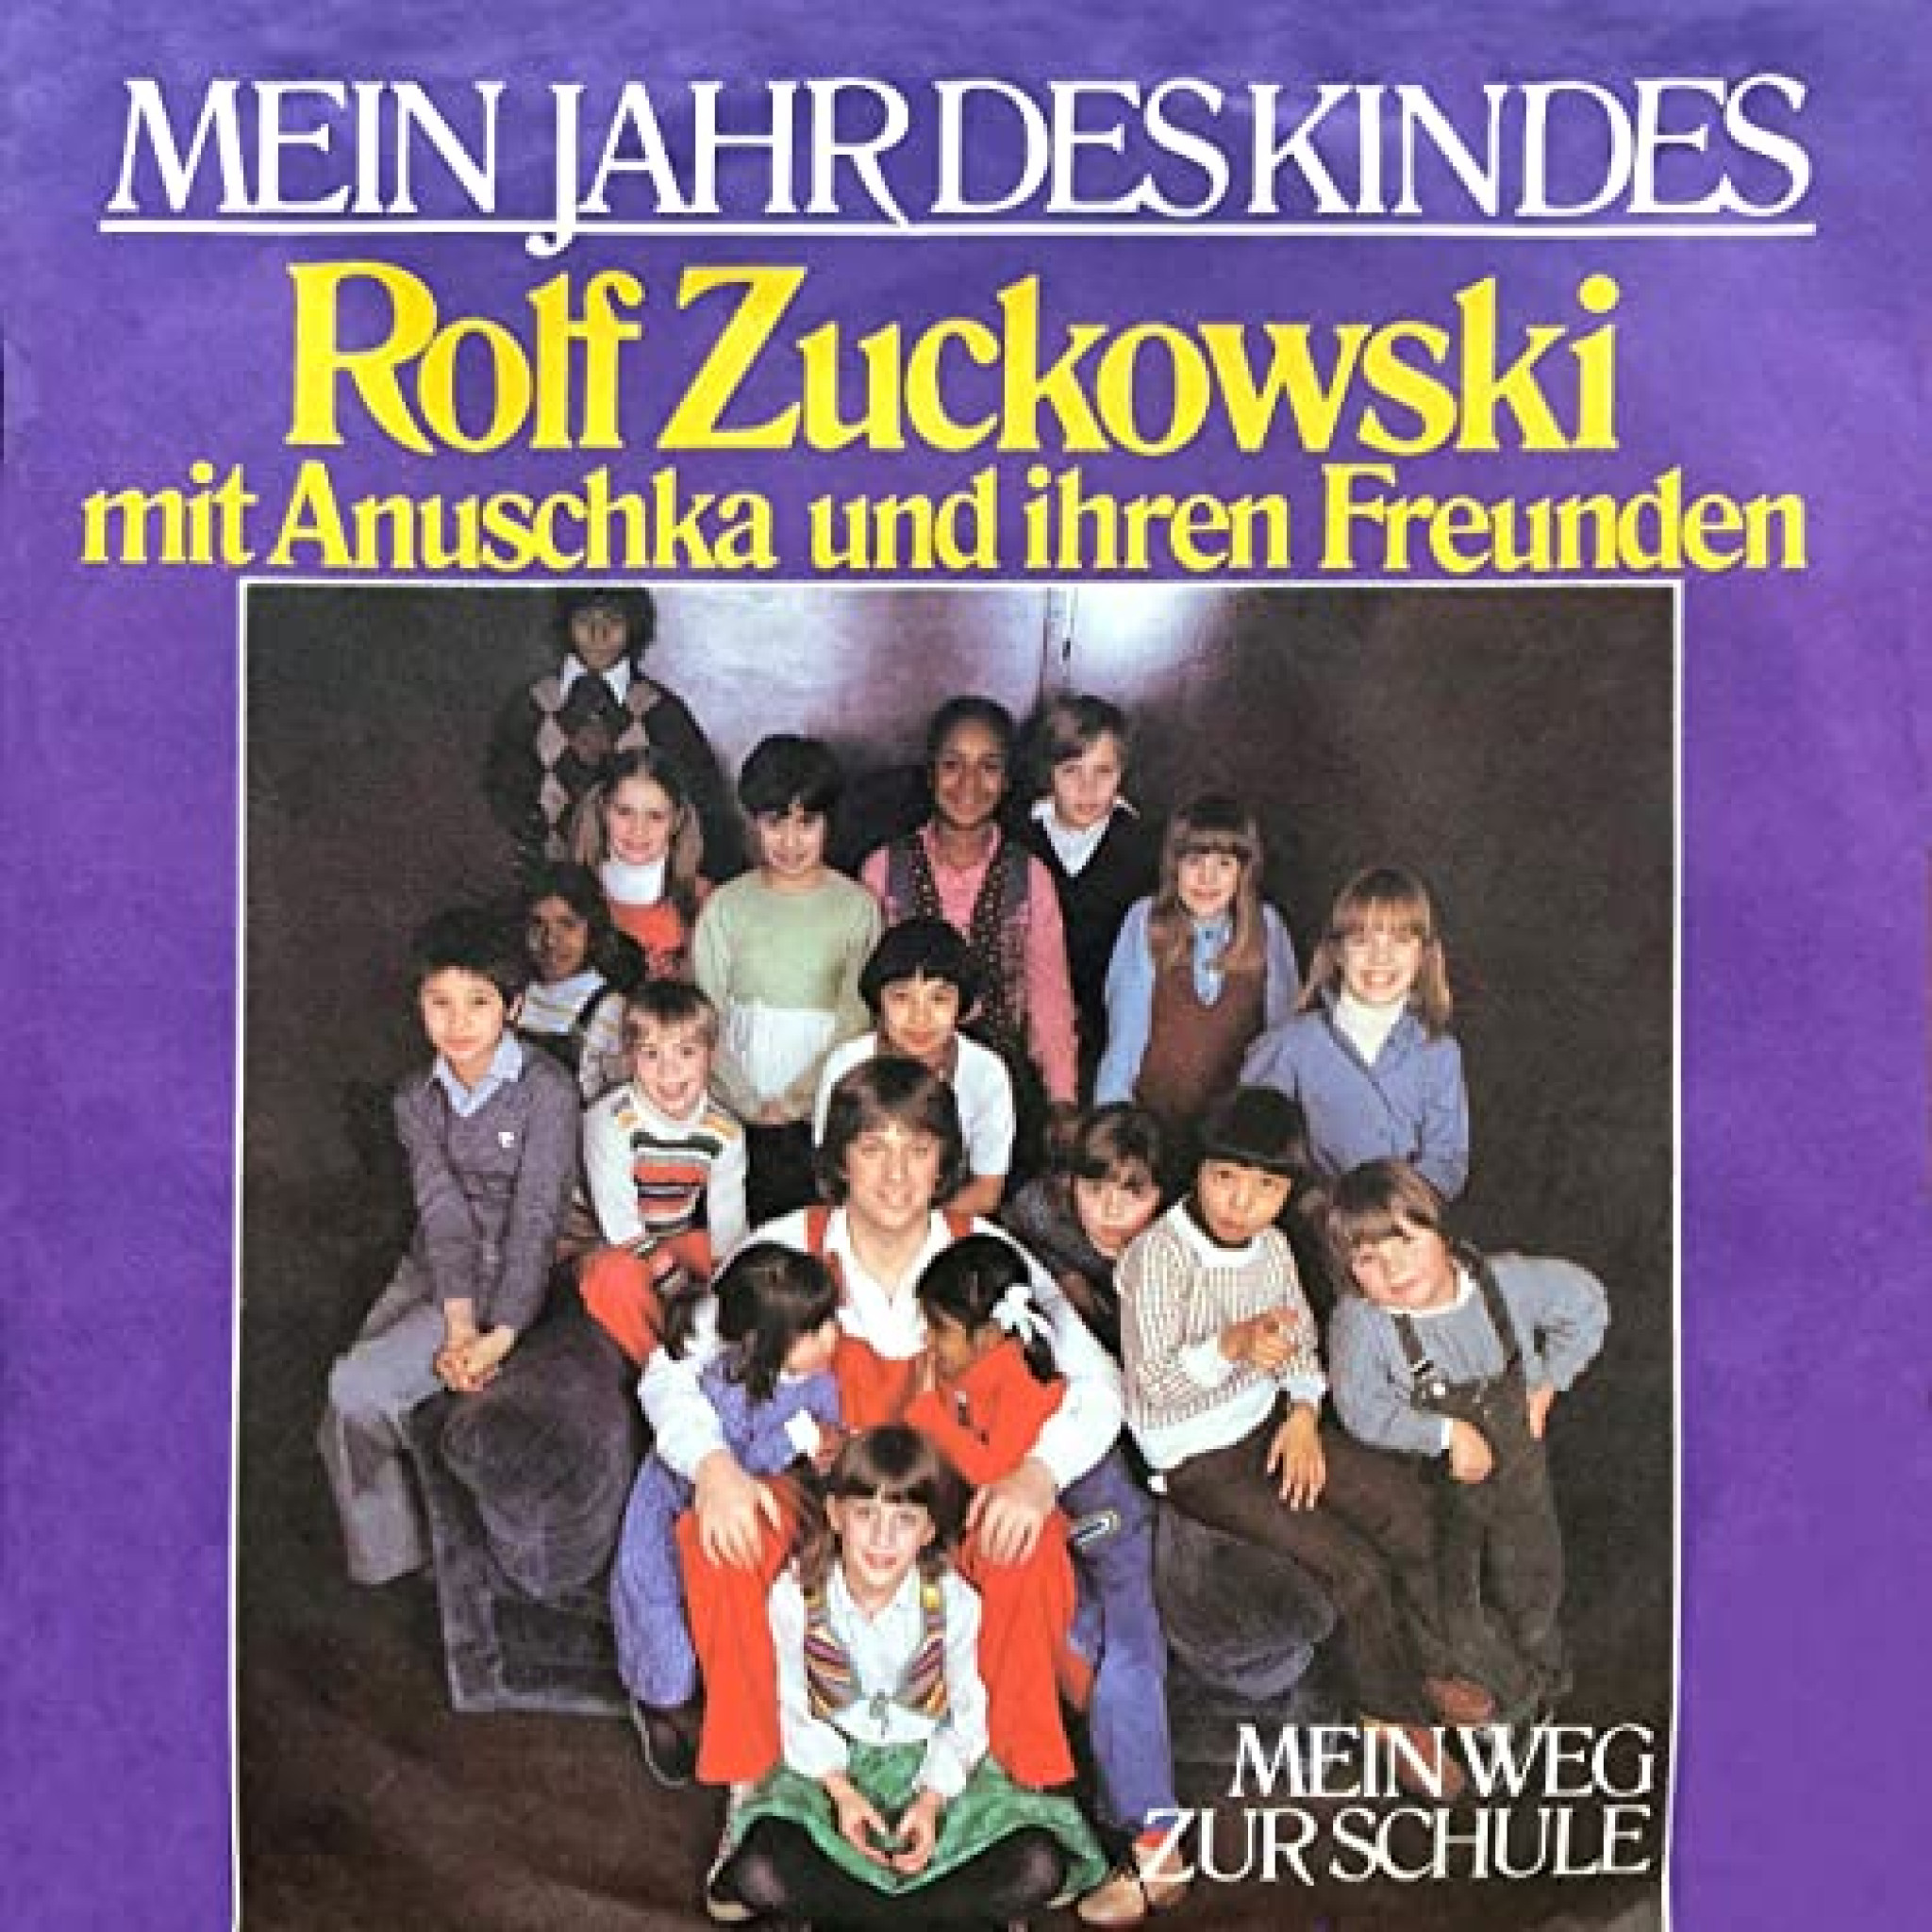 Rolf Zuckowski mit Anuschka und ihren Freunden: Mein Jahr des Kindes / Mein Weg zur Schule